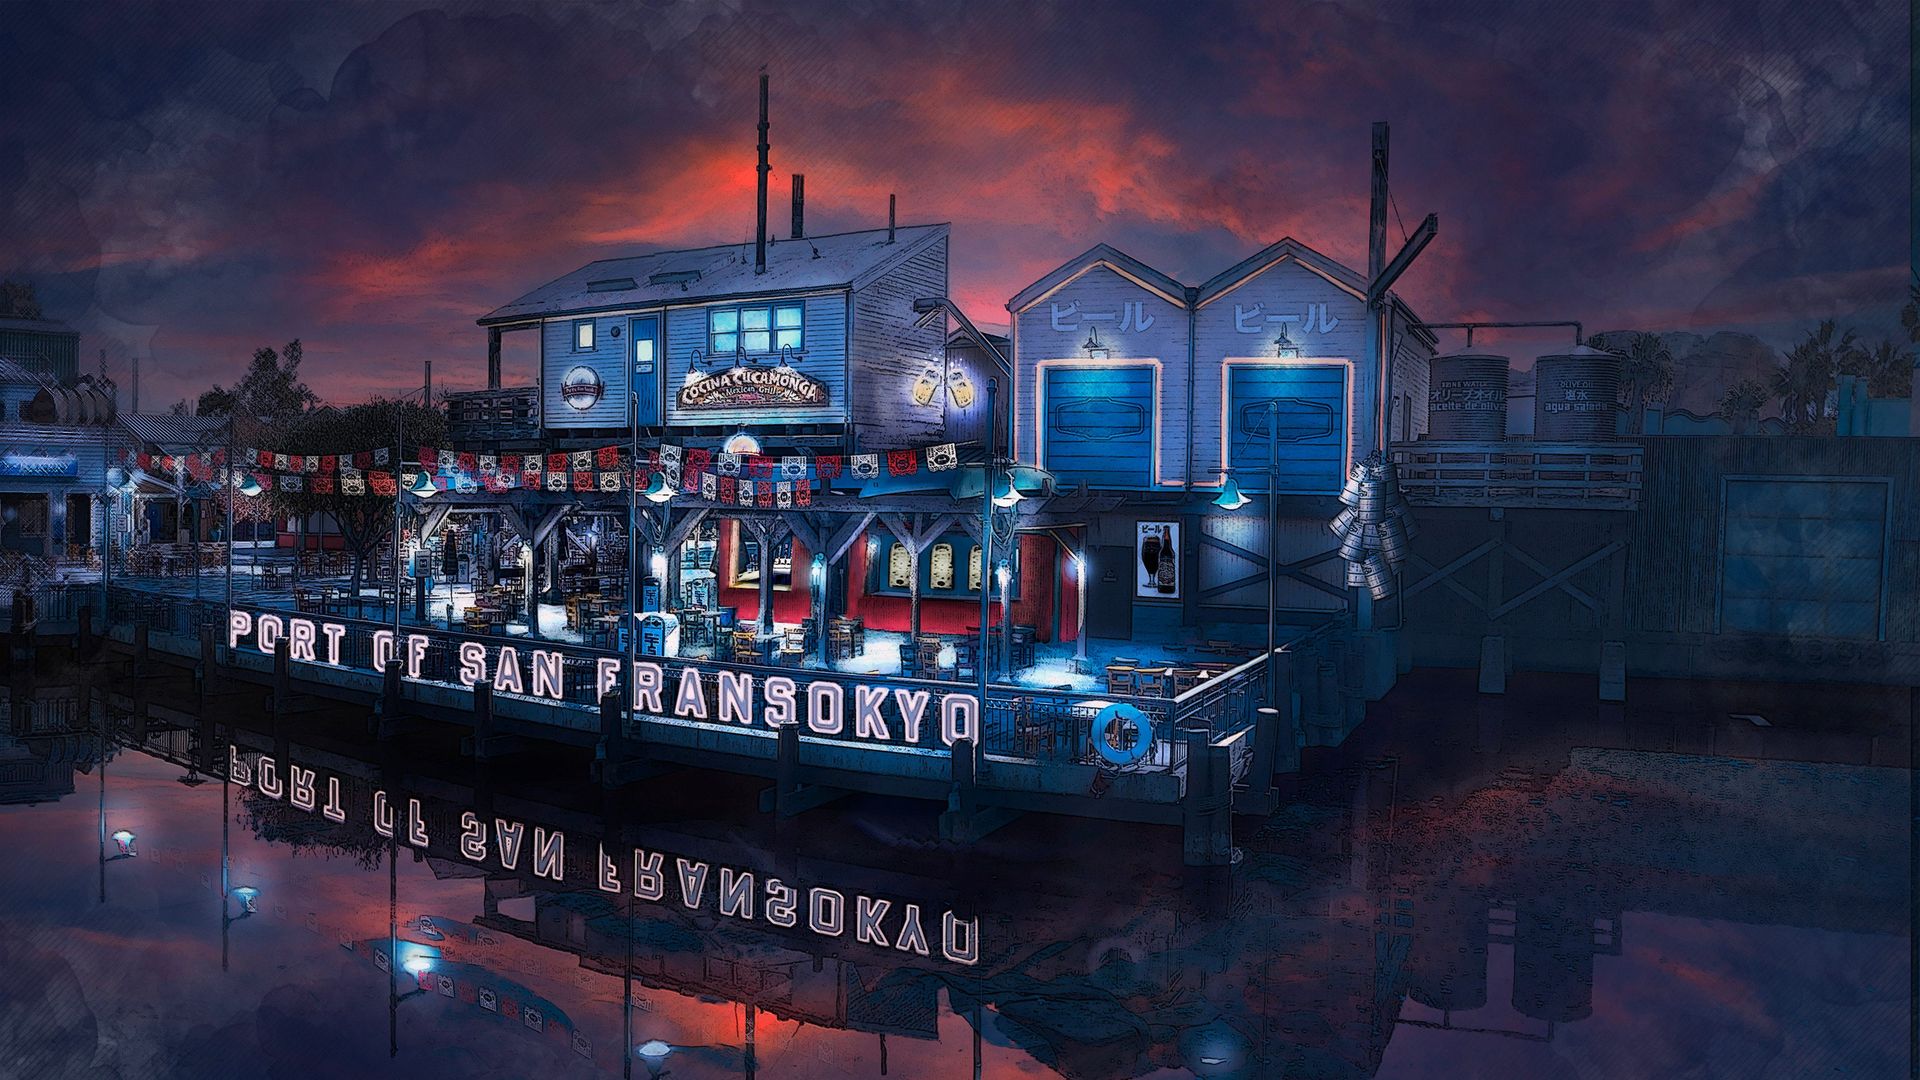 Conceptual art showing a port of San Fransokyo